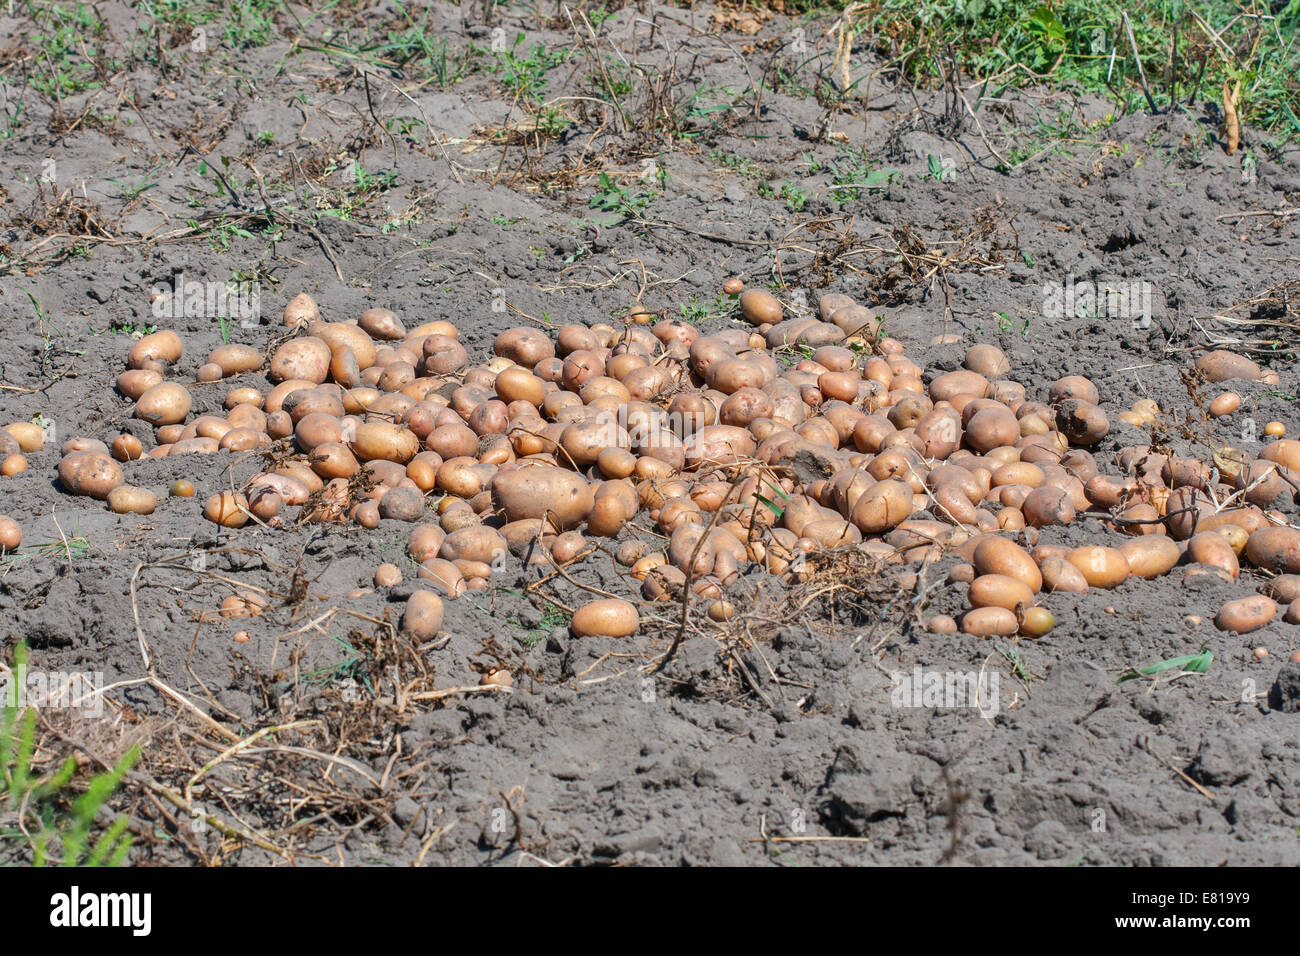 summer potato crop in the garden Stock Photo